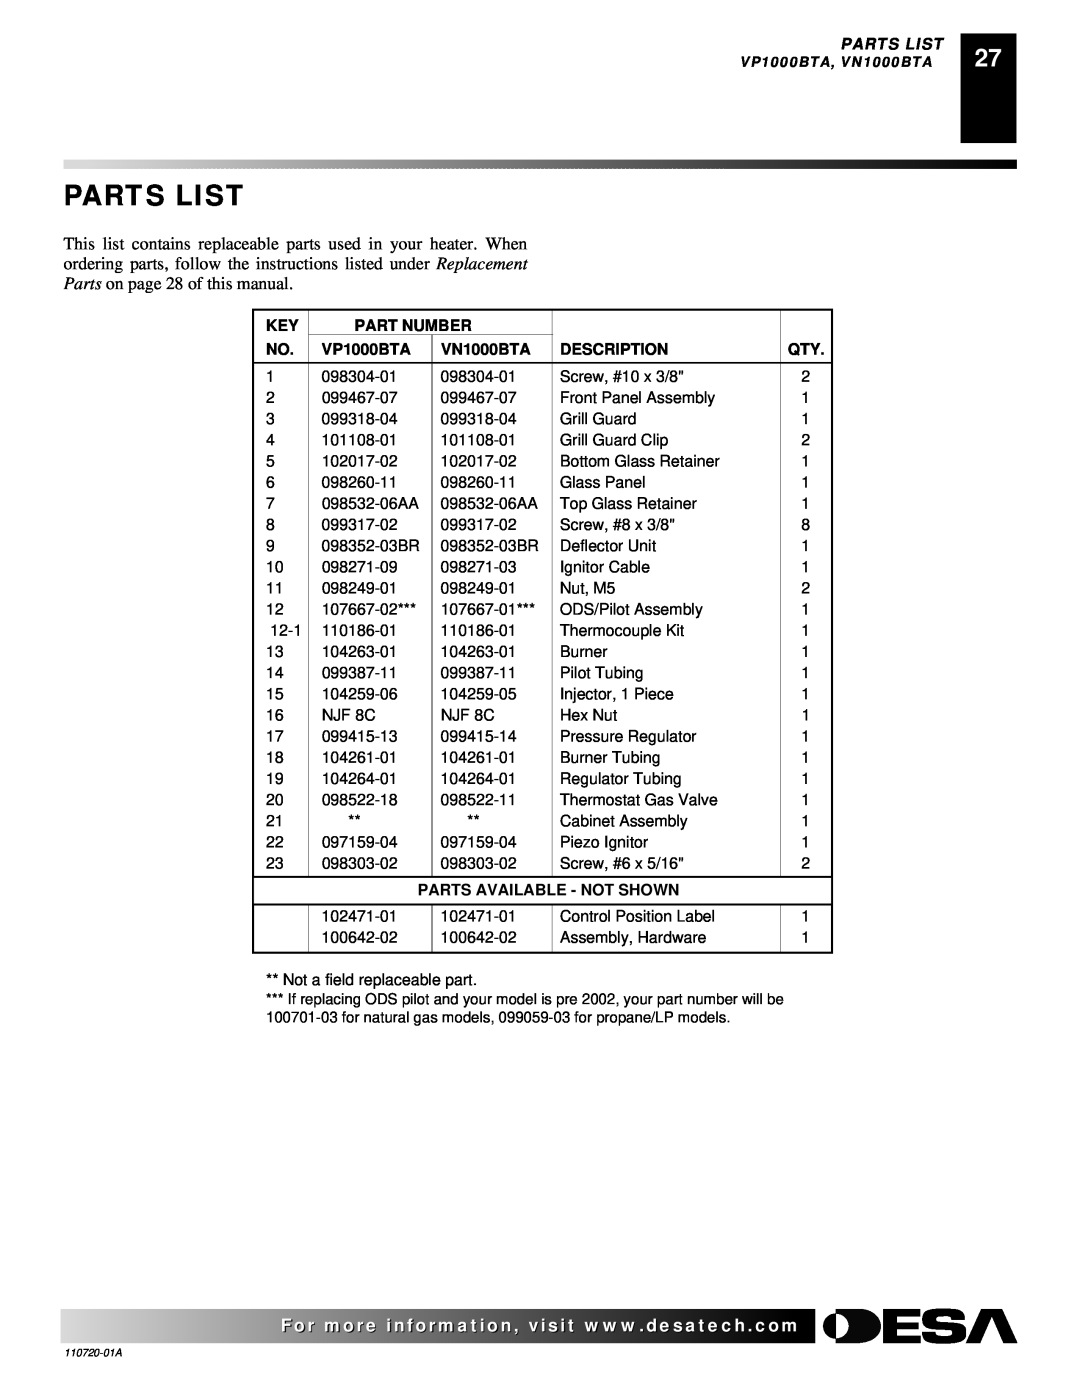 Desa VP10A, VP1000BTA VN10A Parts List, Part Number, VN1000BTA, Description, Parts Available - Not Shown 